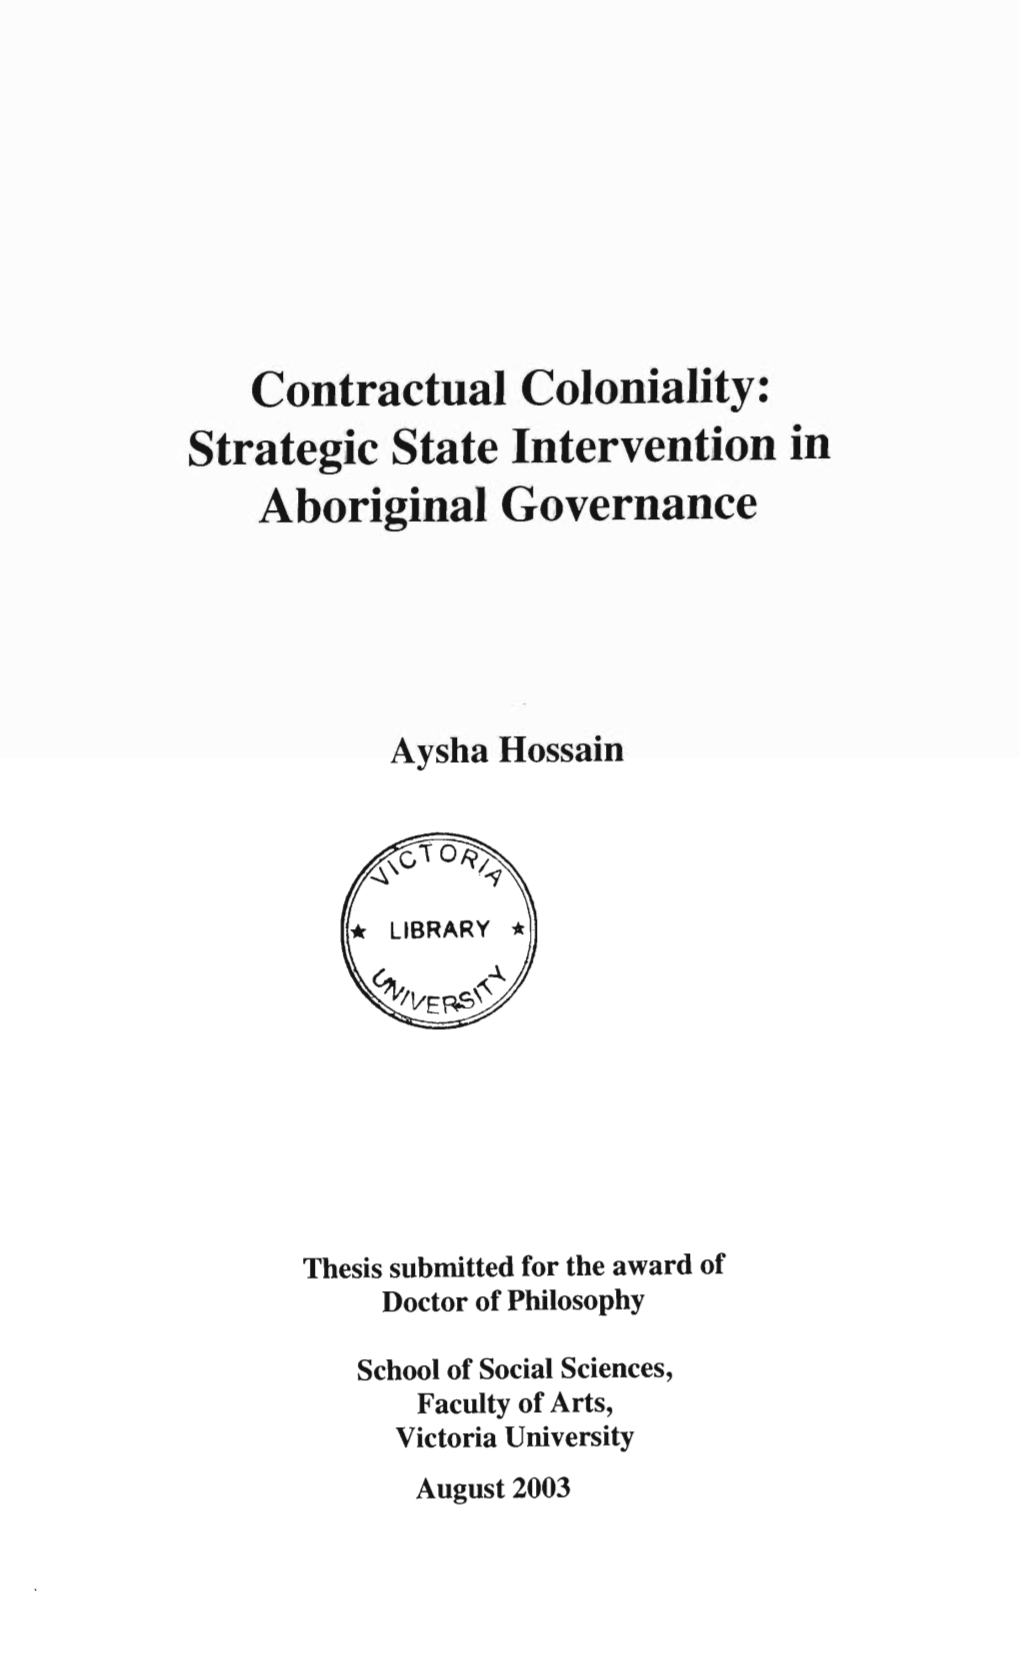 Strategic State Intervention in Aboriginal Governance